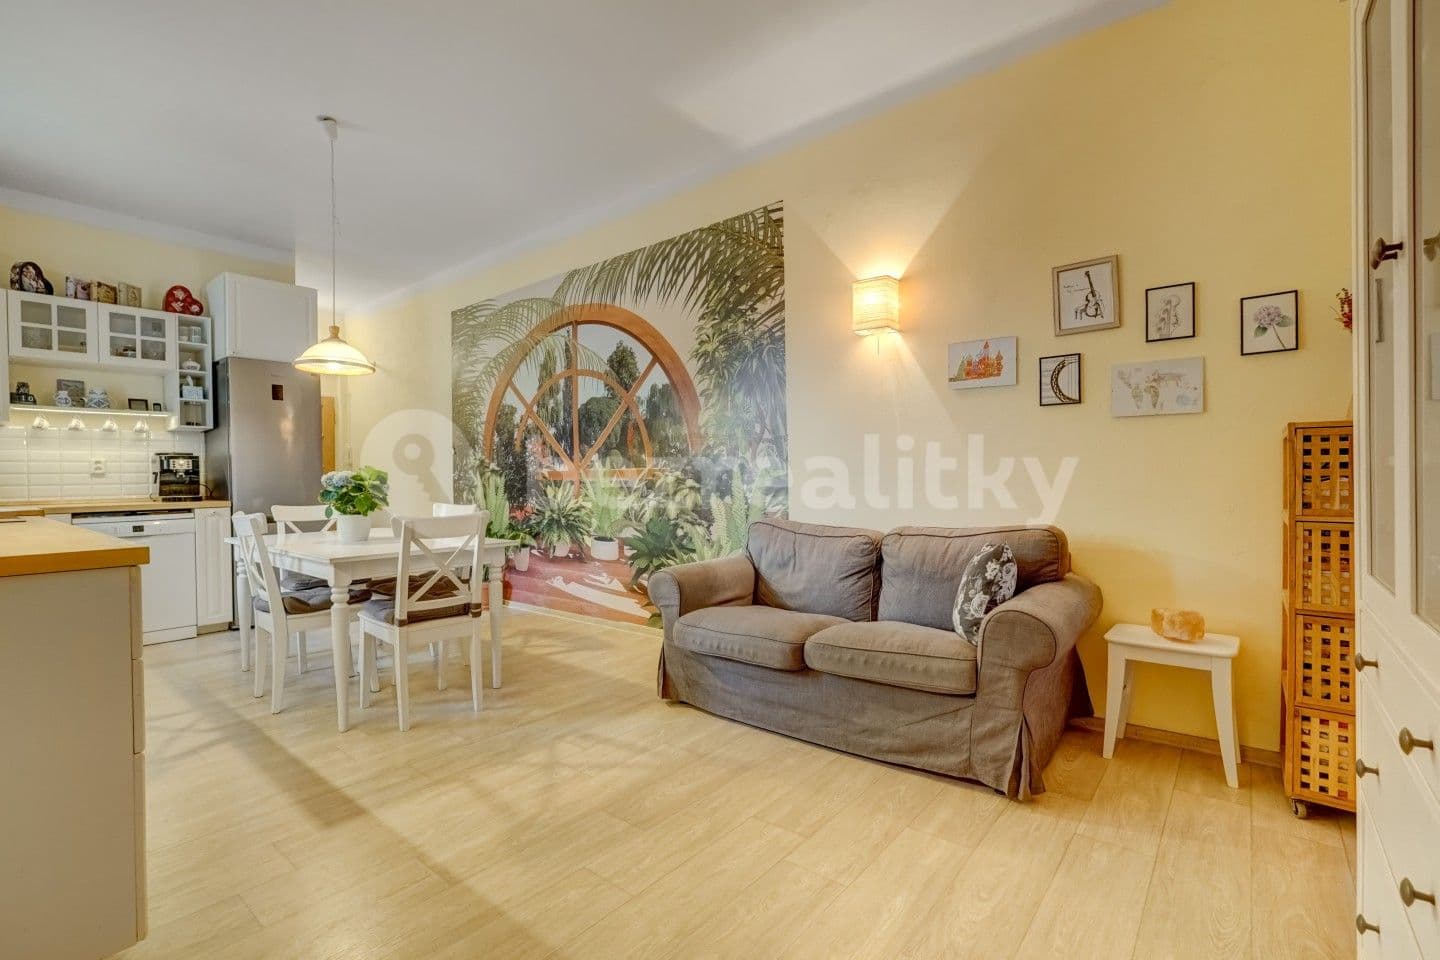 5 bedroom flat for sale, 115 m², Českobratrská, Teplice, Ústecký Region